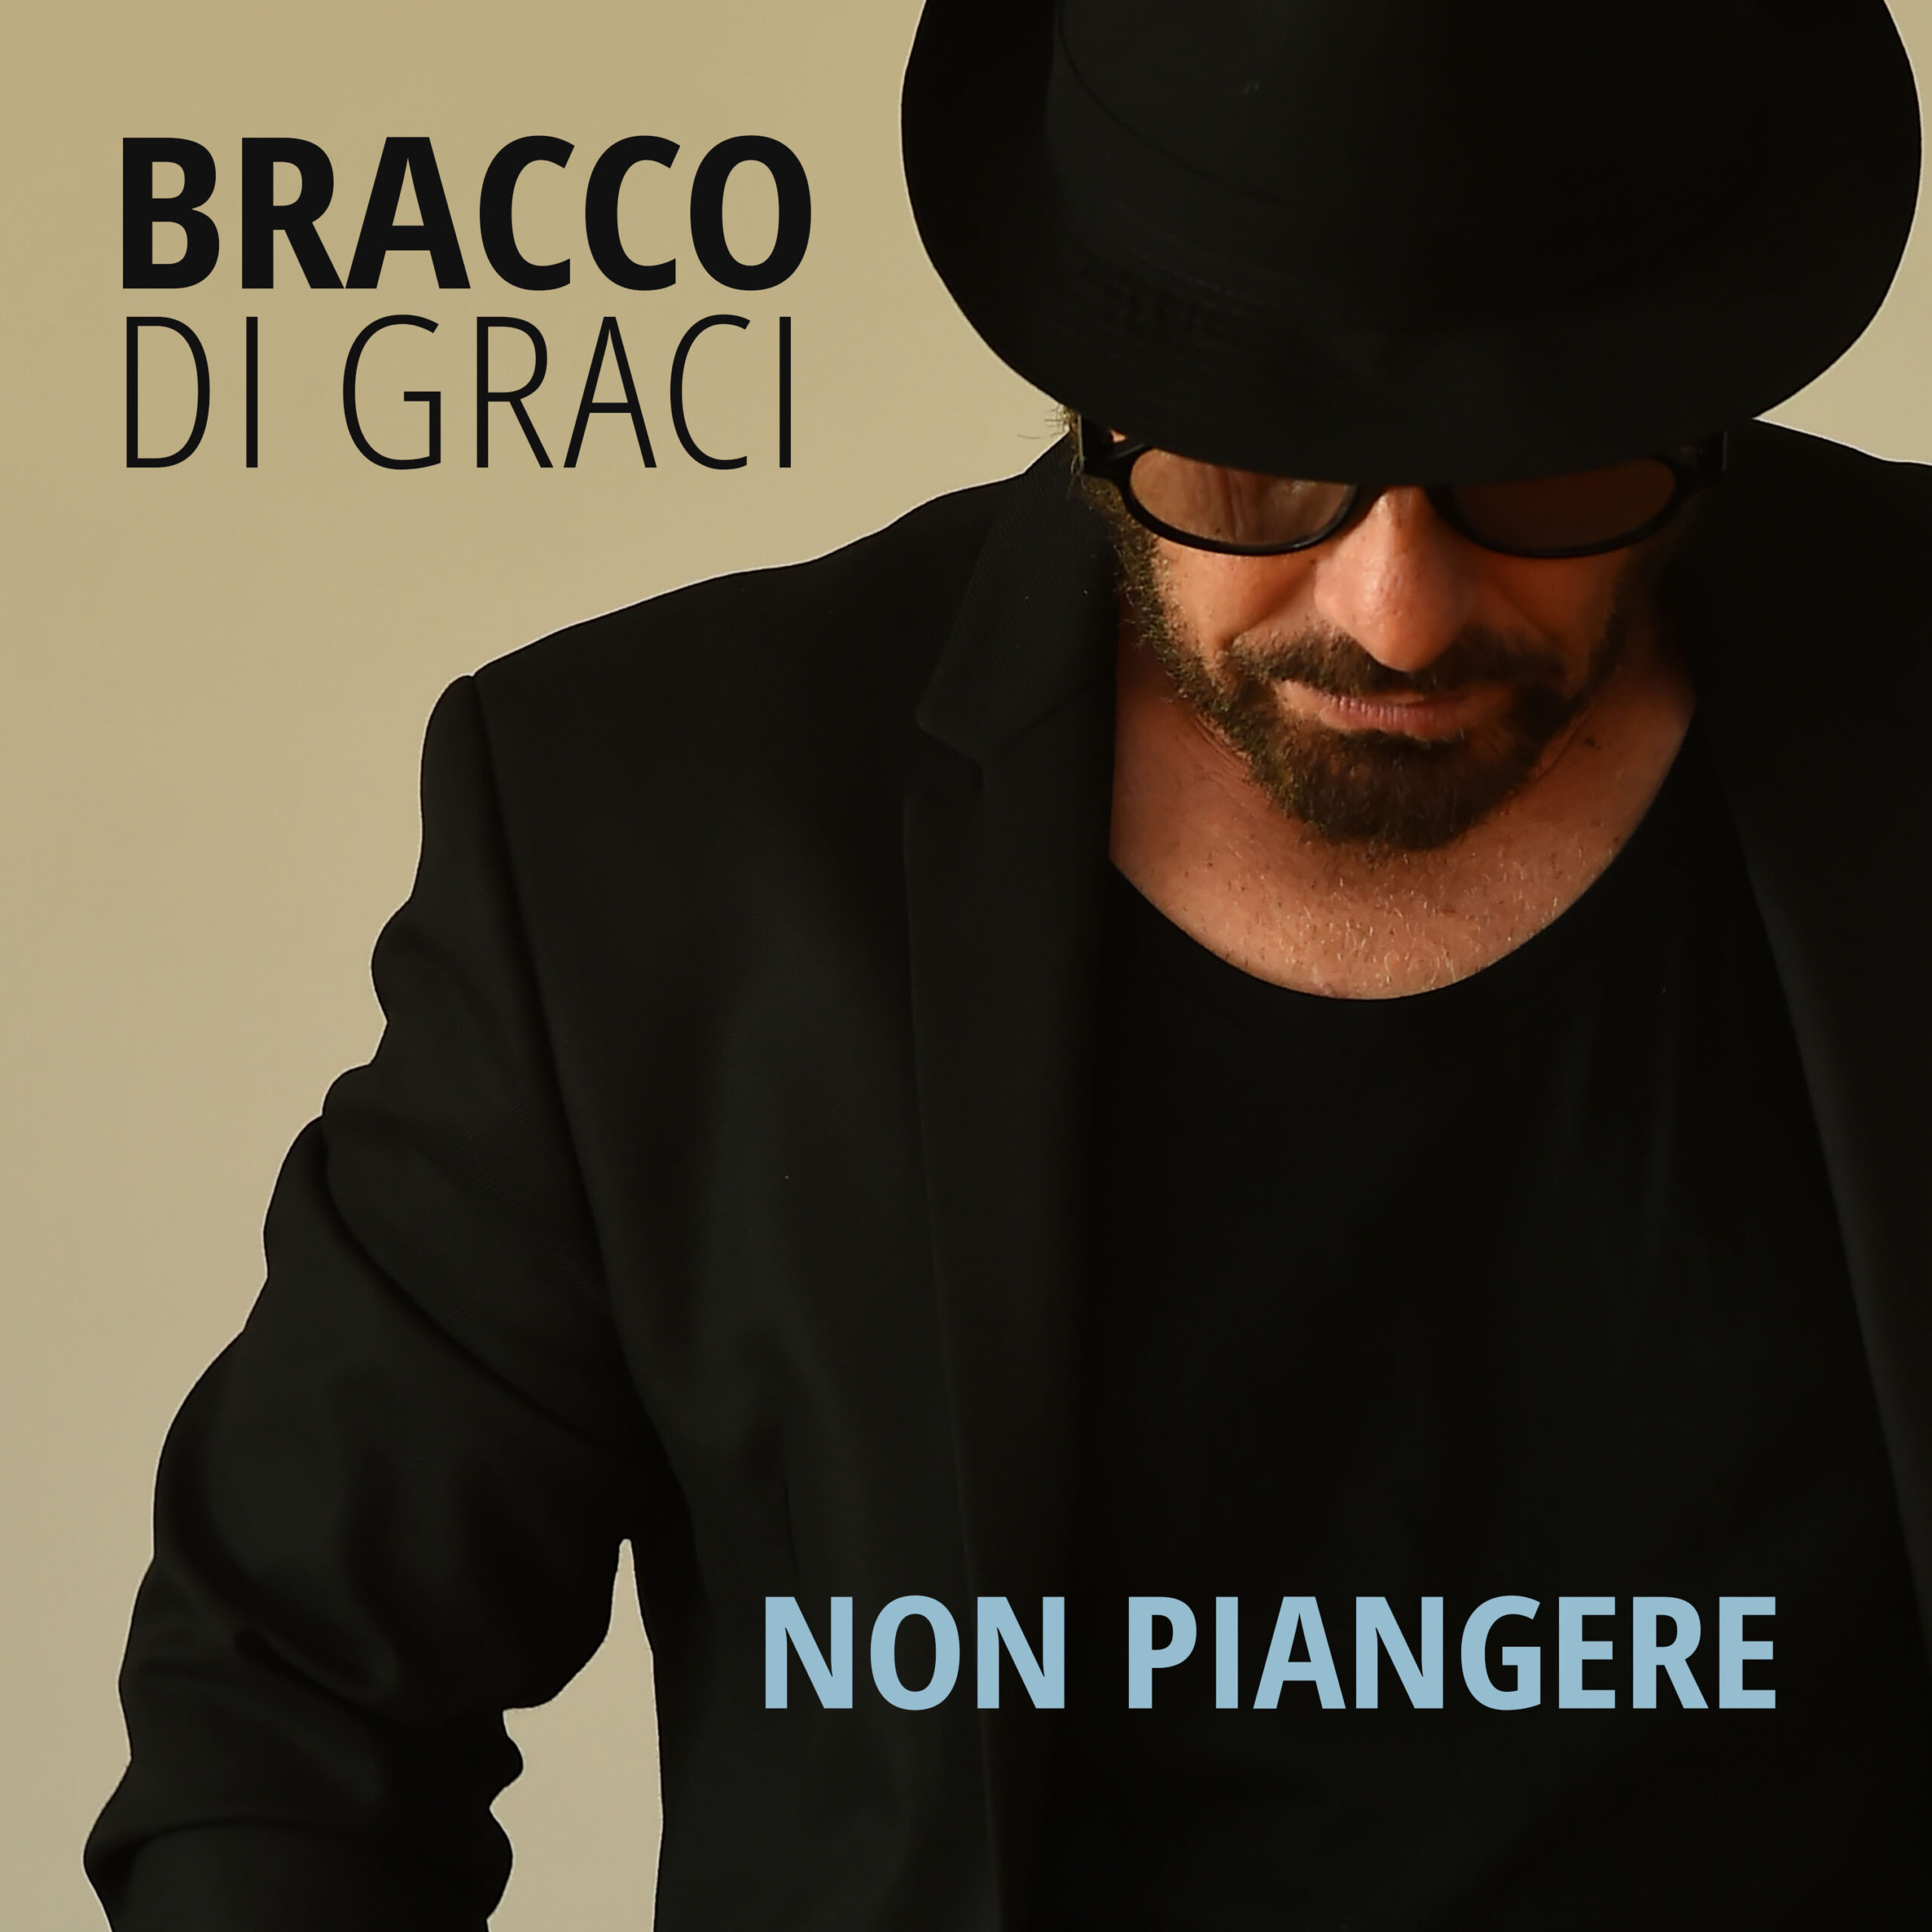 Bracco Di Graci, il nuovo singolo “Non piangere” in radio e su tutte le piattaforme digitali dal 26 maggio 